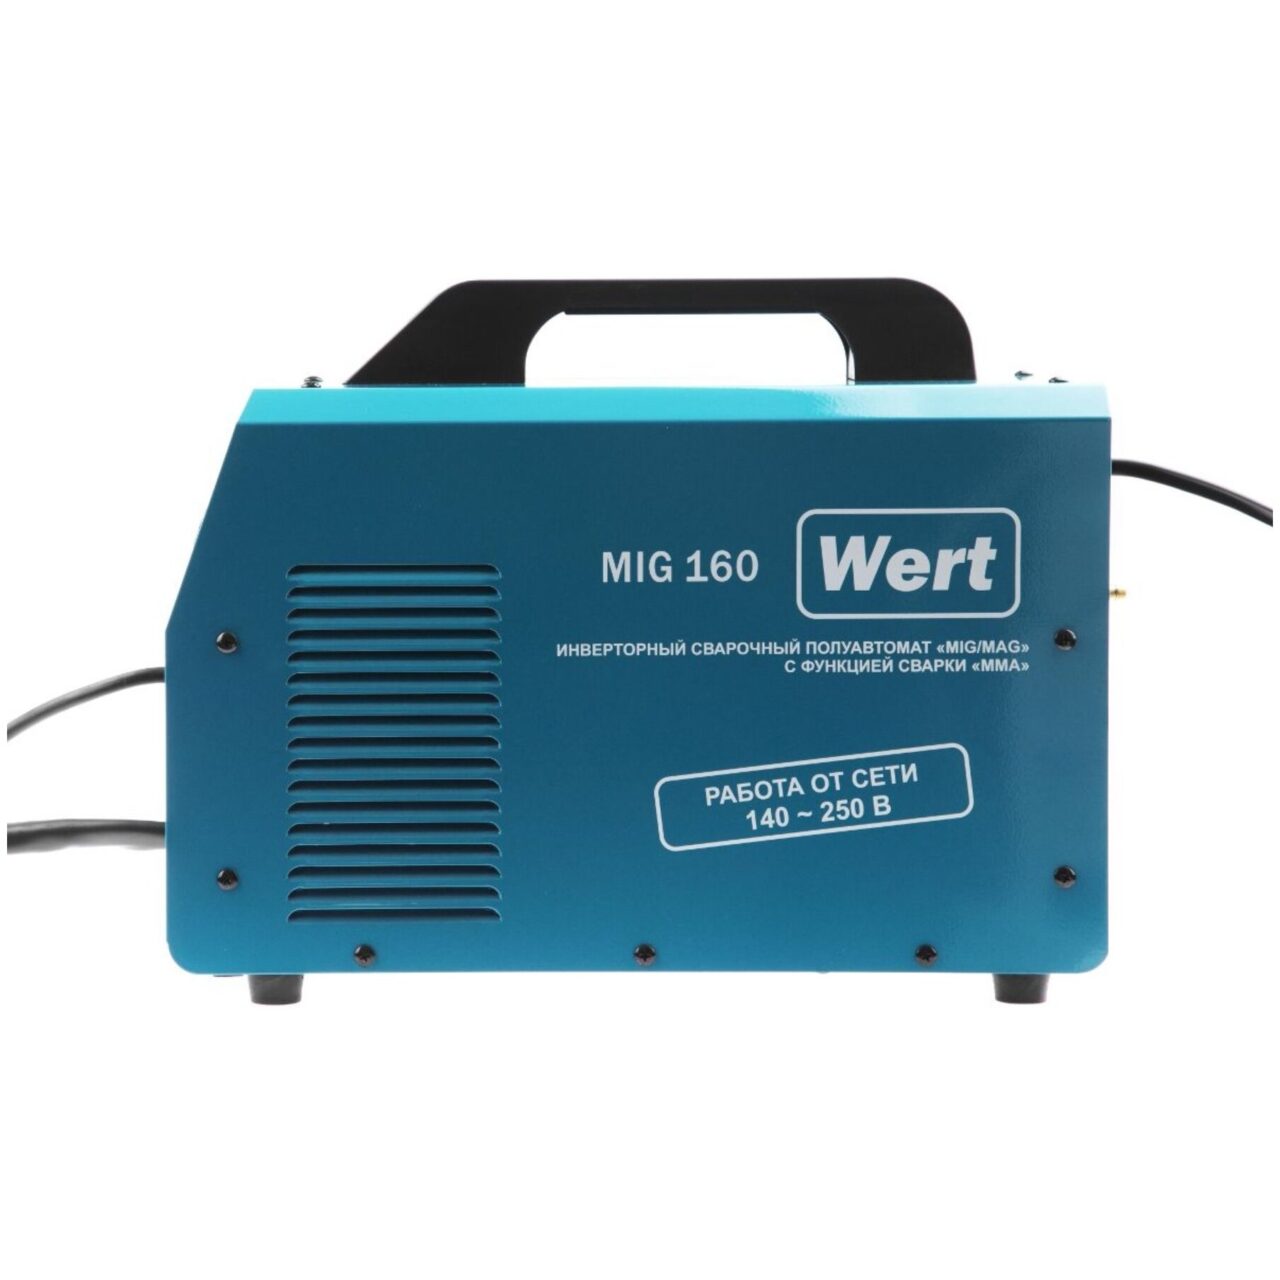 Модель Wert MIG 160